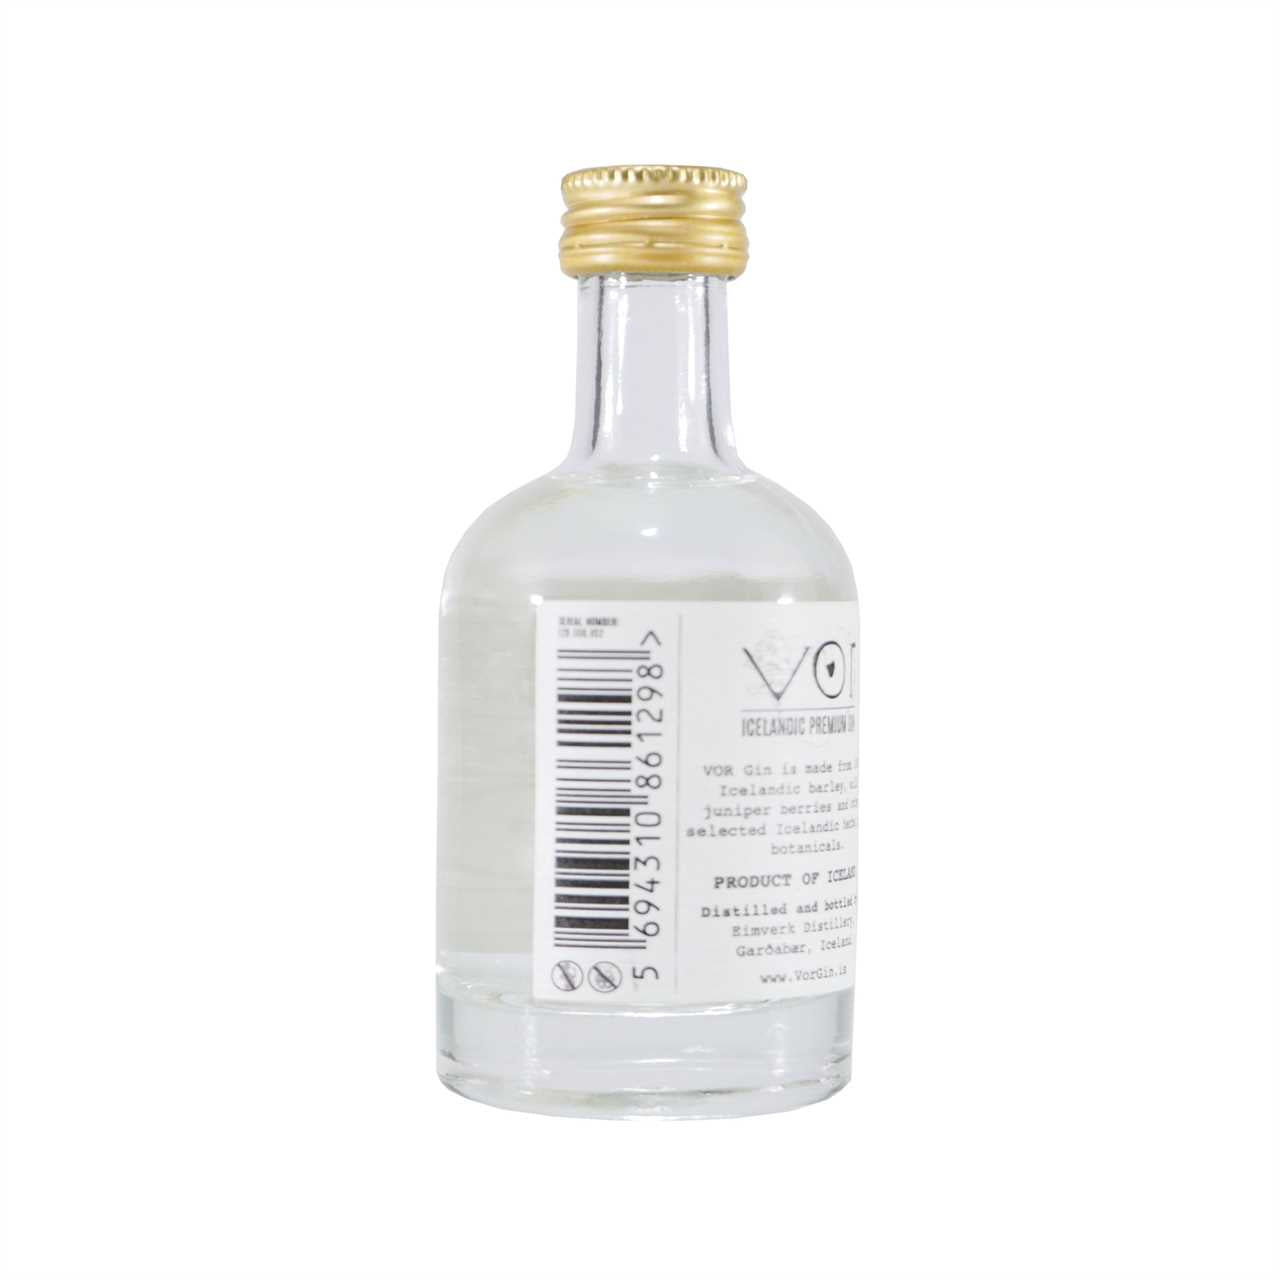 VOR Icelandic Gin "Miniatur" (0,05 L)